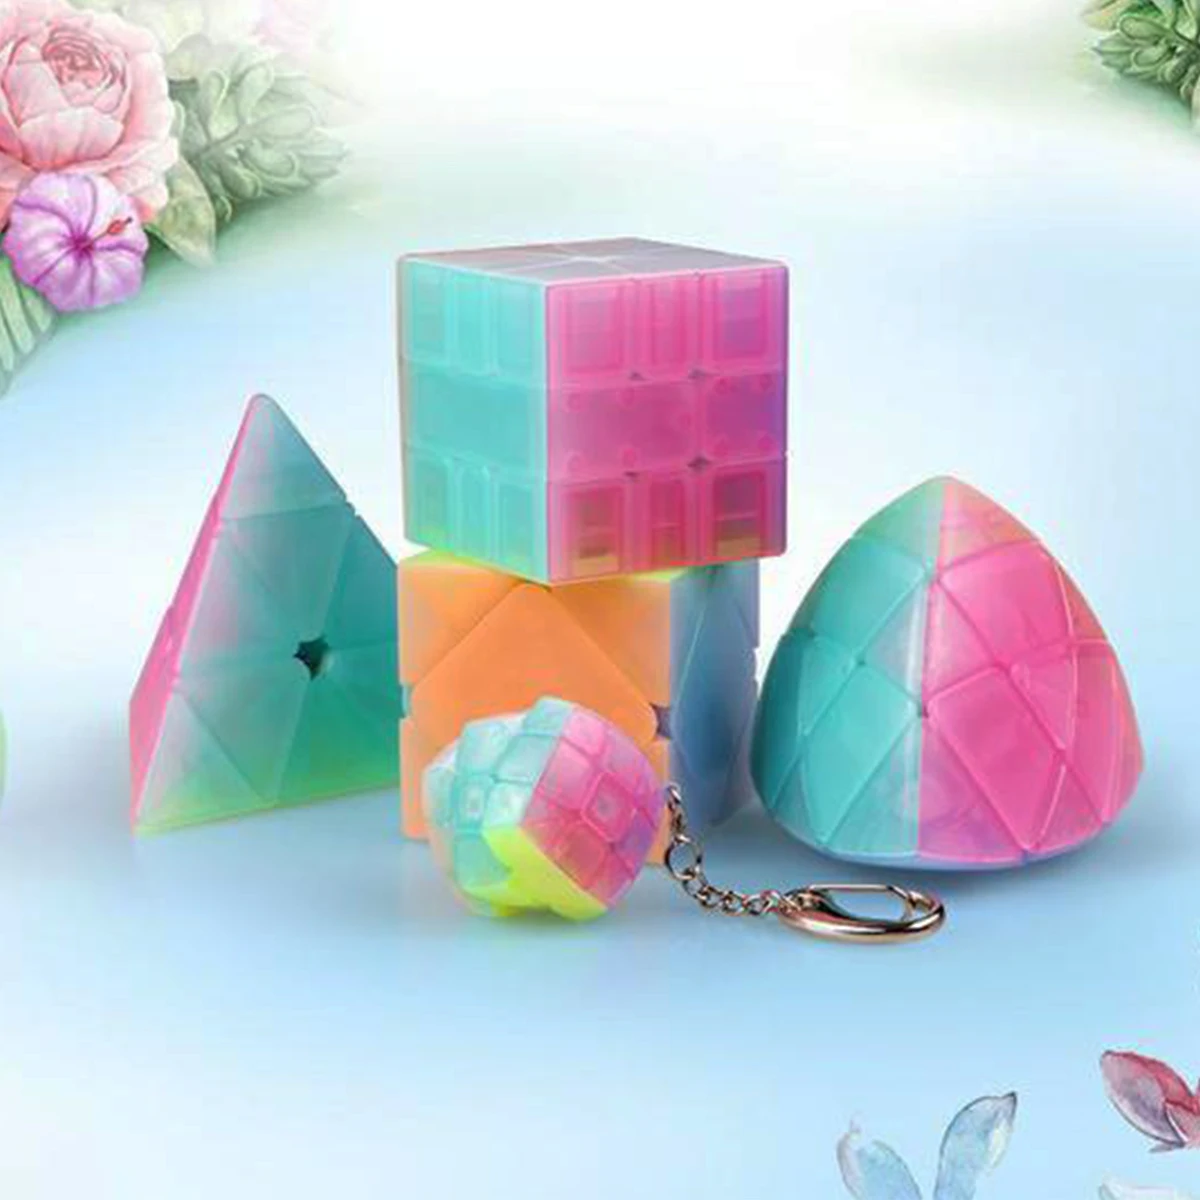 Jelly cube. ЖЕЛЕЙНЫЙ куб. Желейные кубики. Желатиновый кубик. Кубик дизайн.